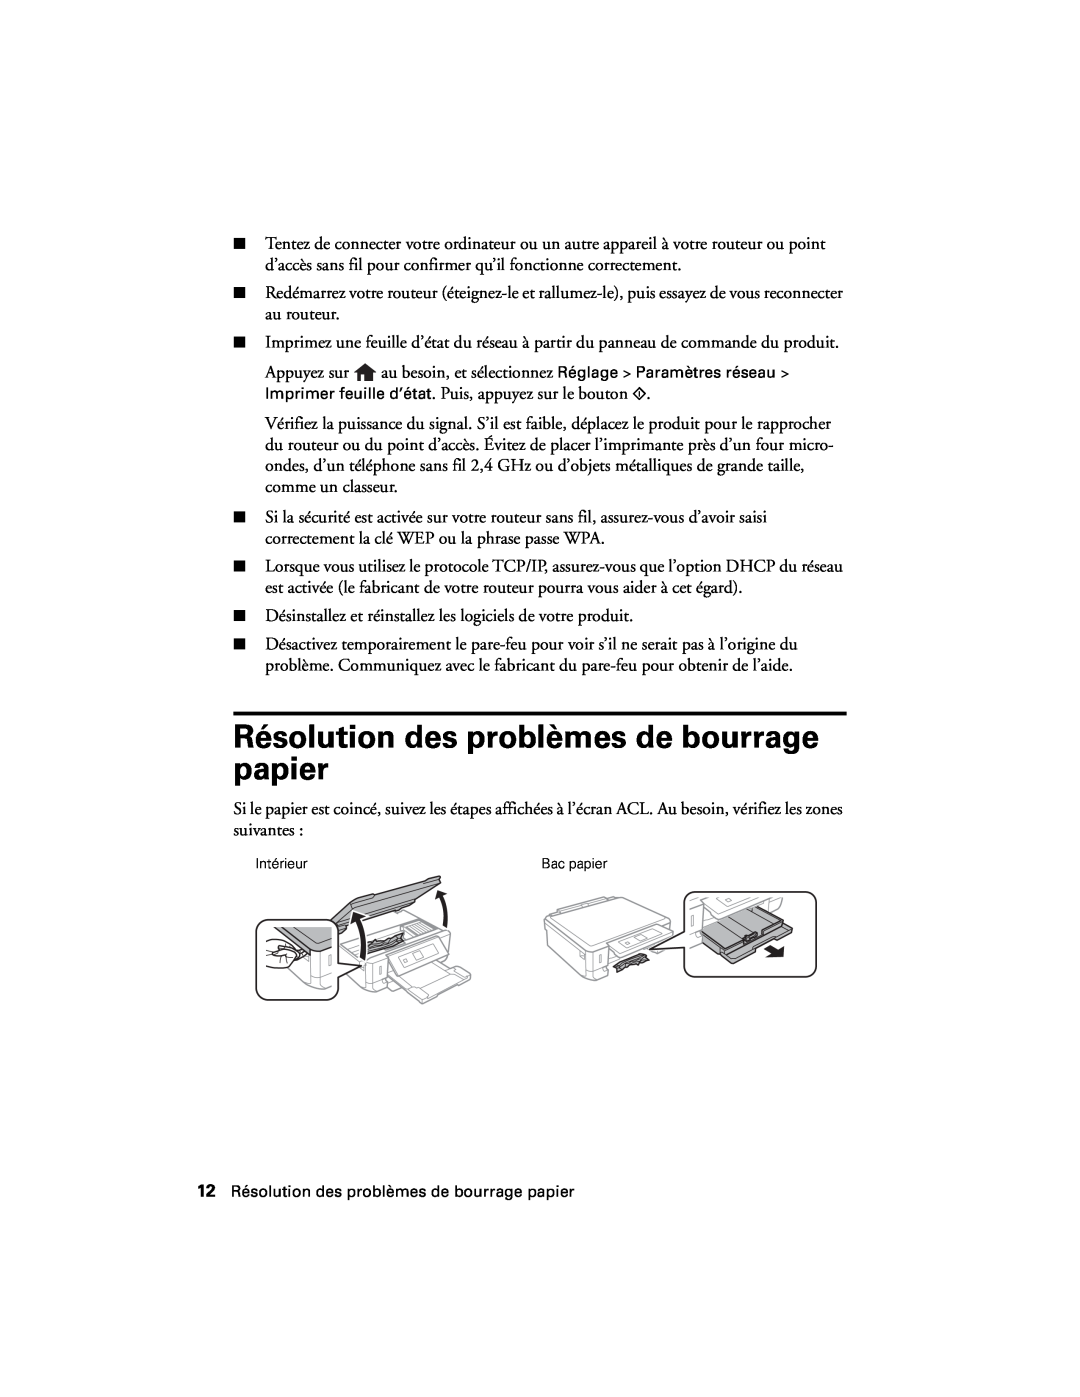 Epson XP-520 manual Résolution des problèmes de bourrage papier 